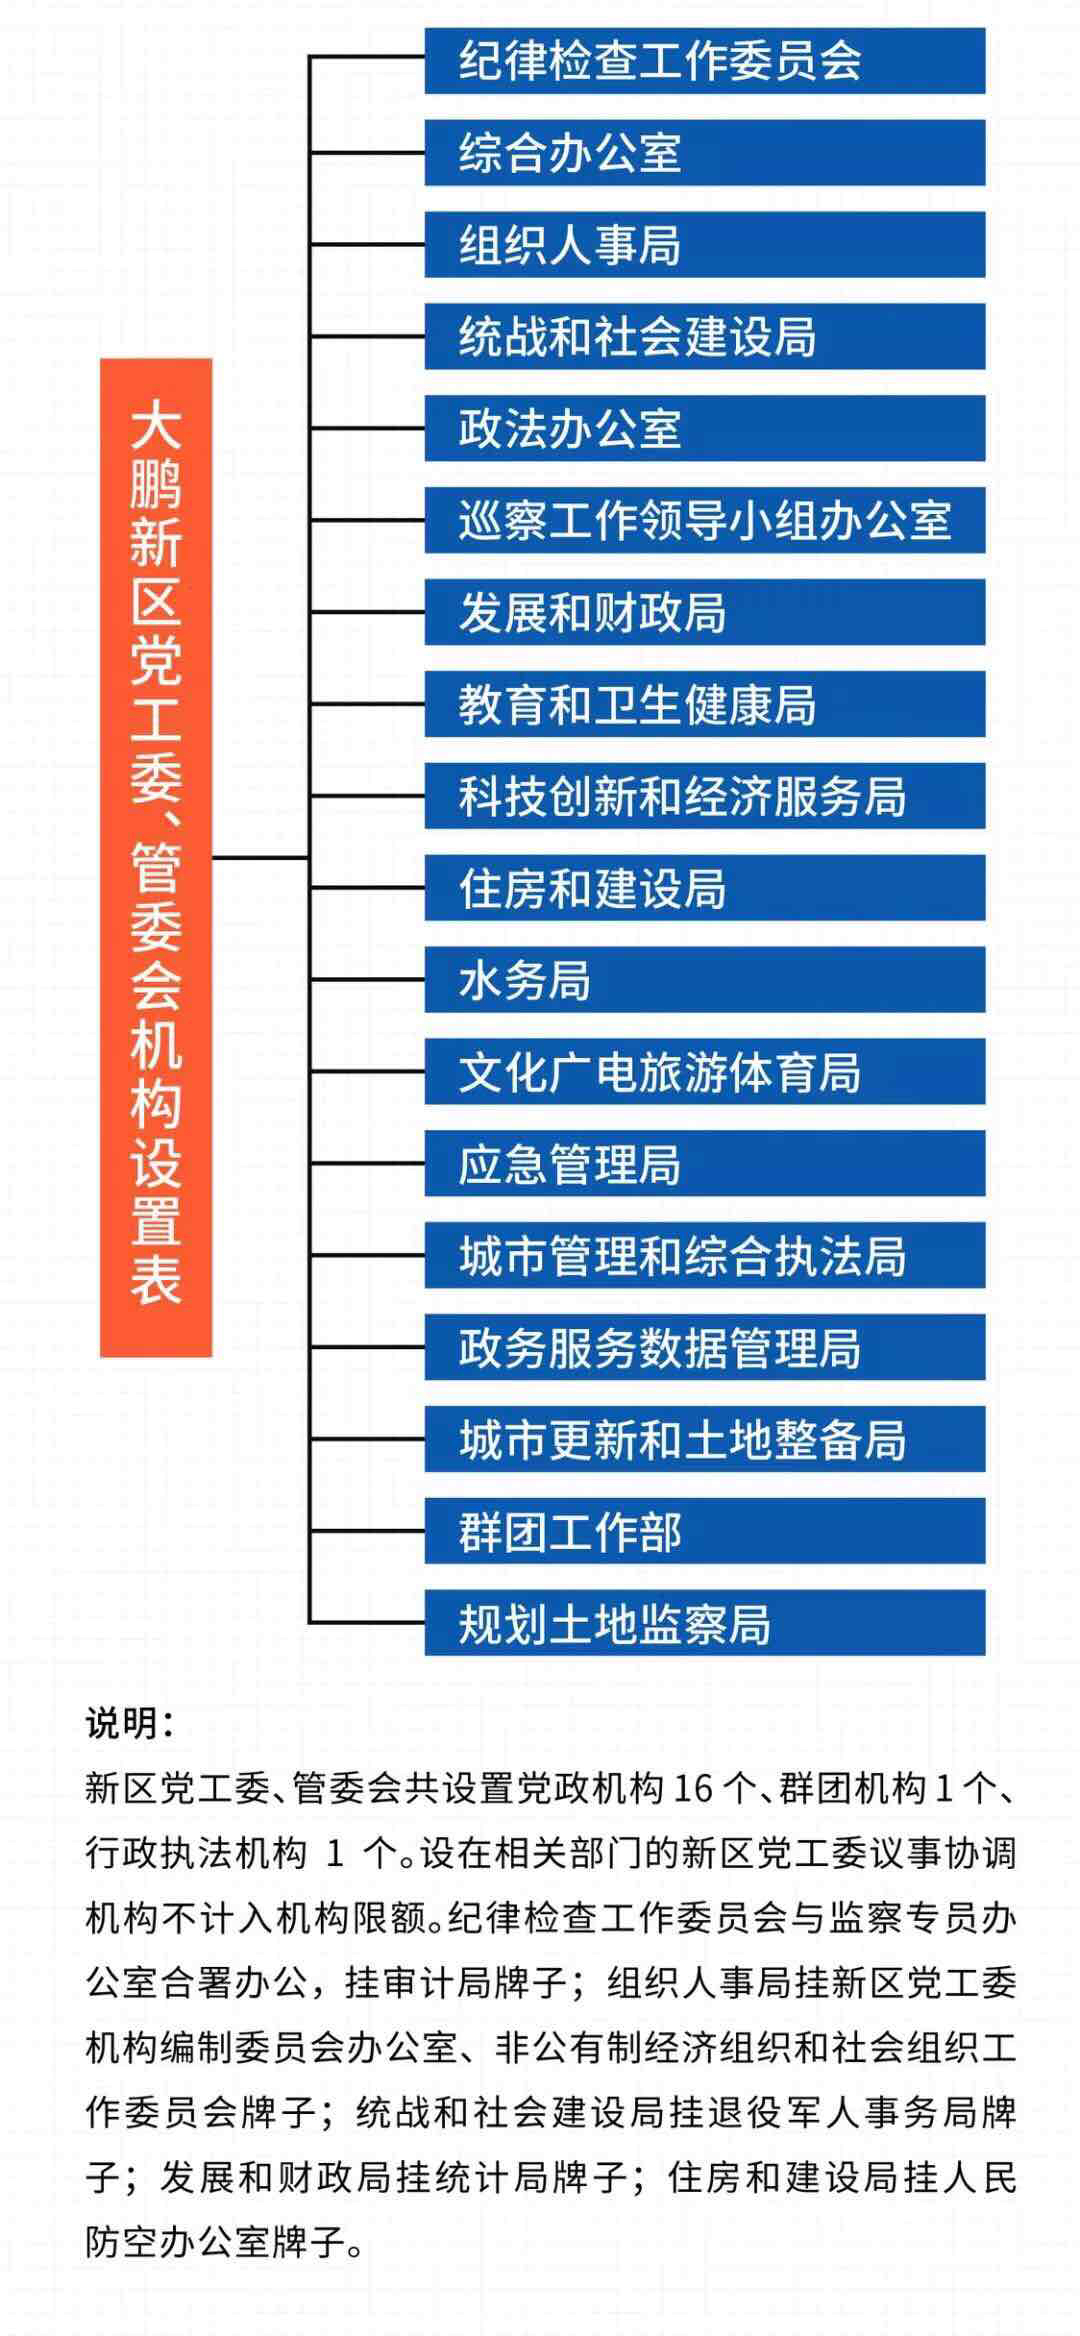 改革后的大鹏新区党工委、管委会机构设置表